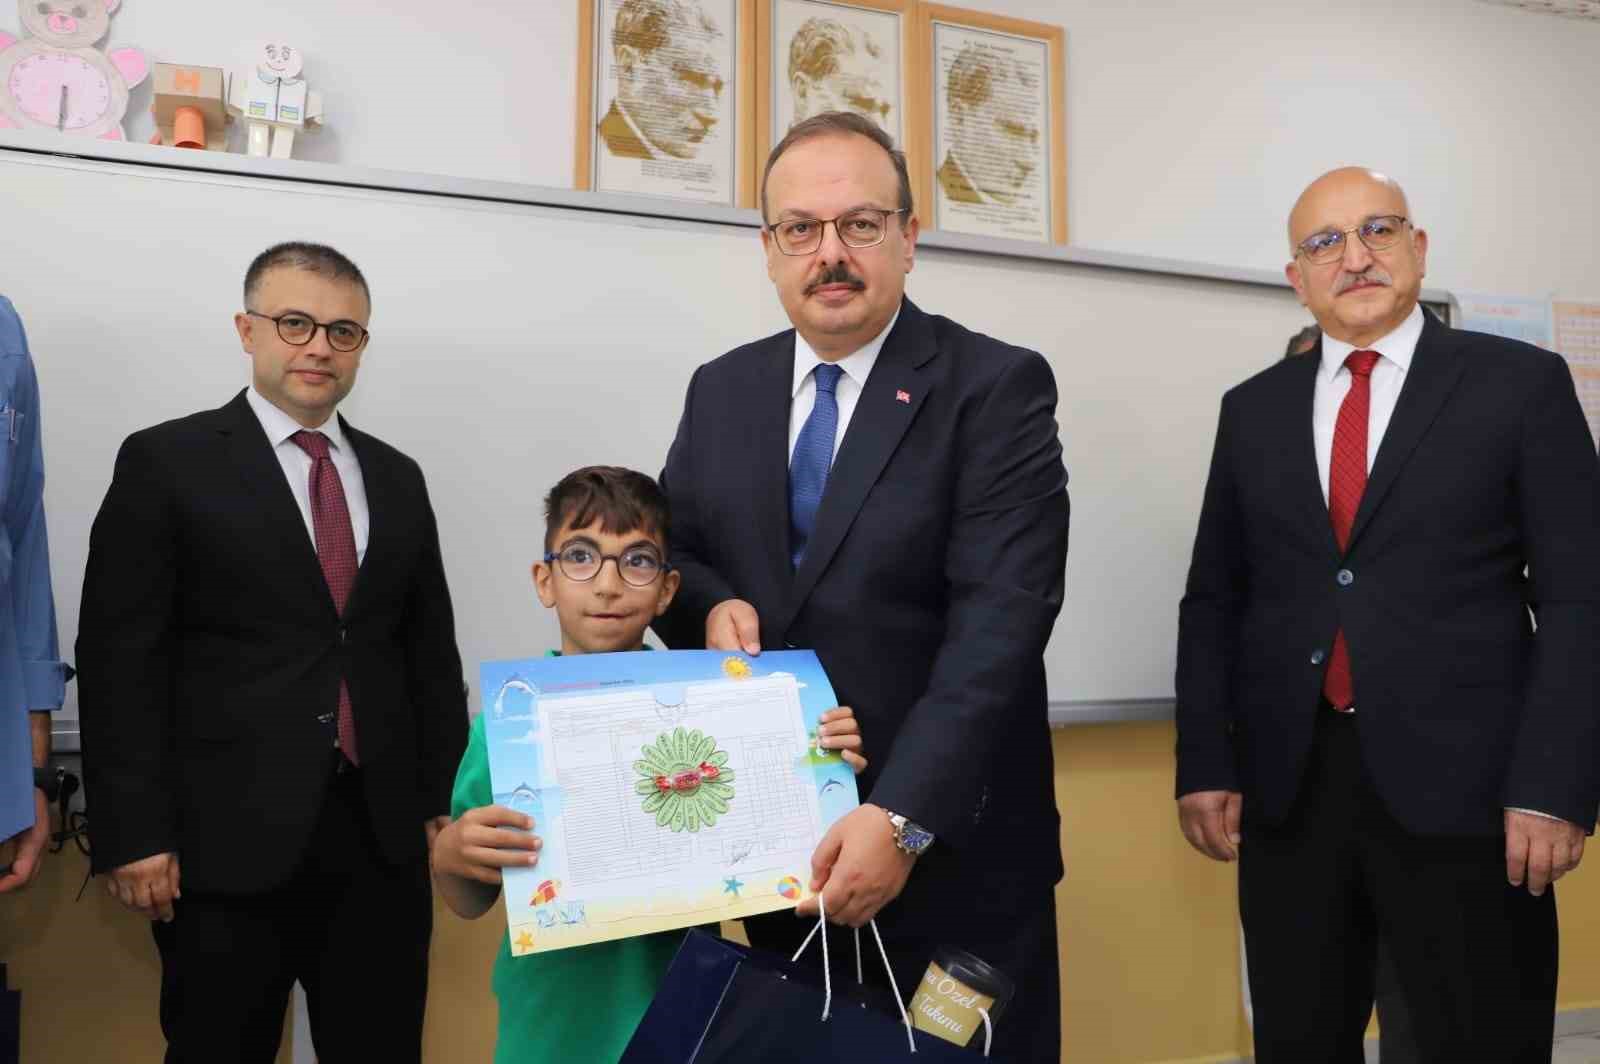 Bursa’daki depremzede öğrencilerin takdir başarısı